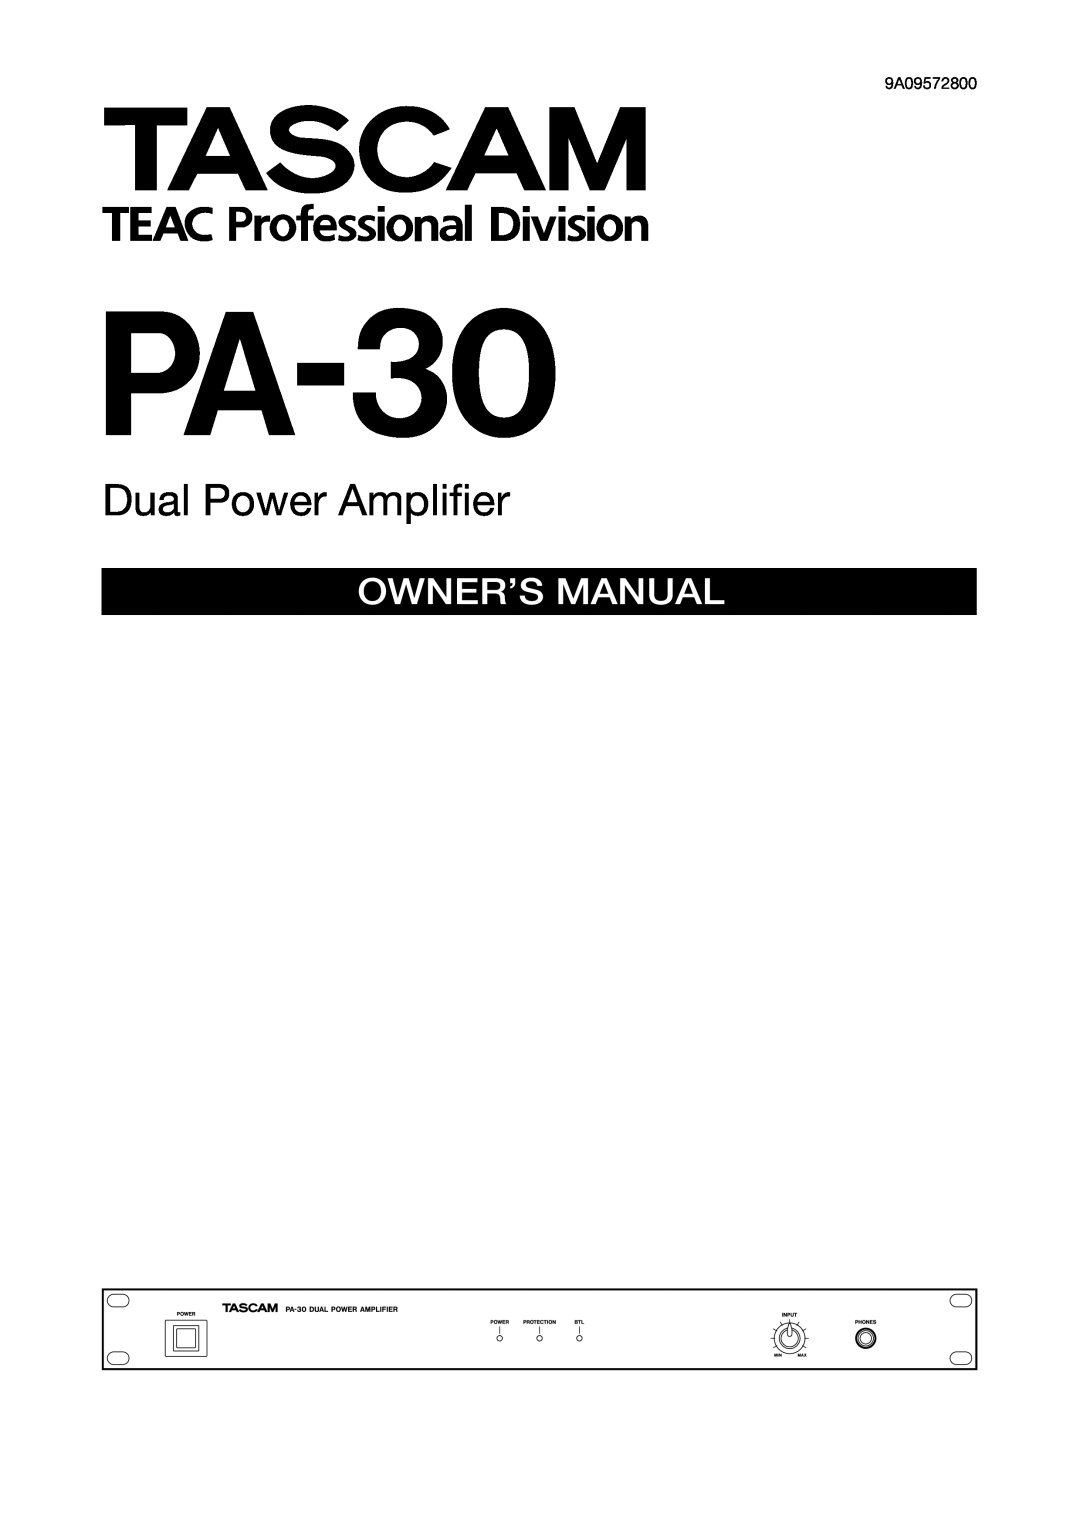 Tascam PA-30 owner manual Dual Power Ampliﬁer 